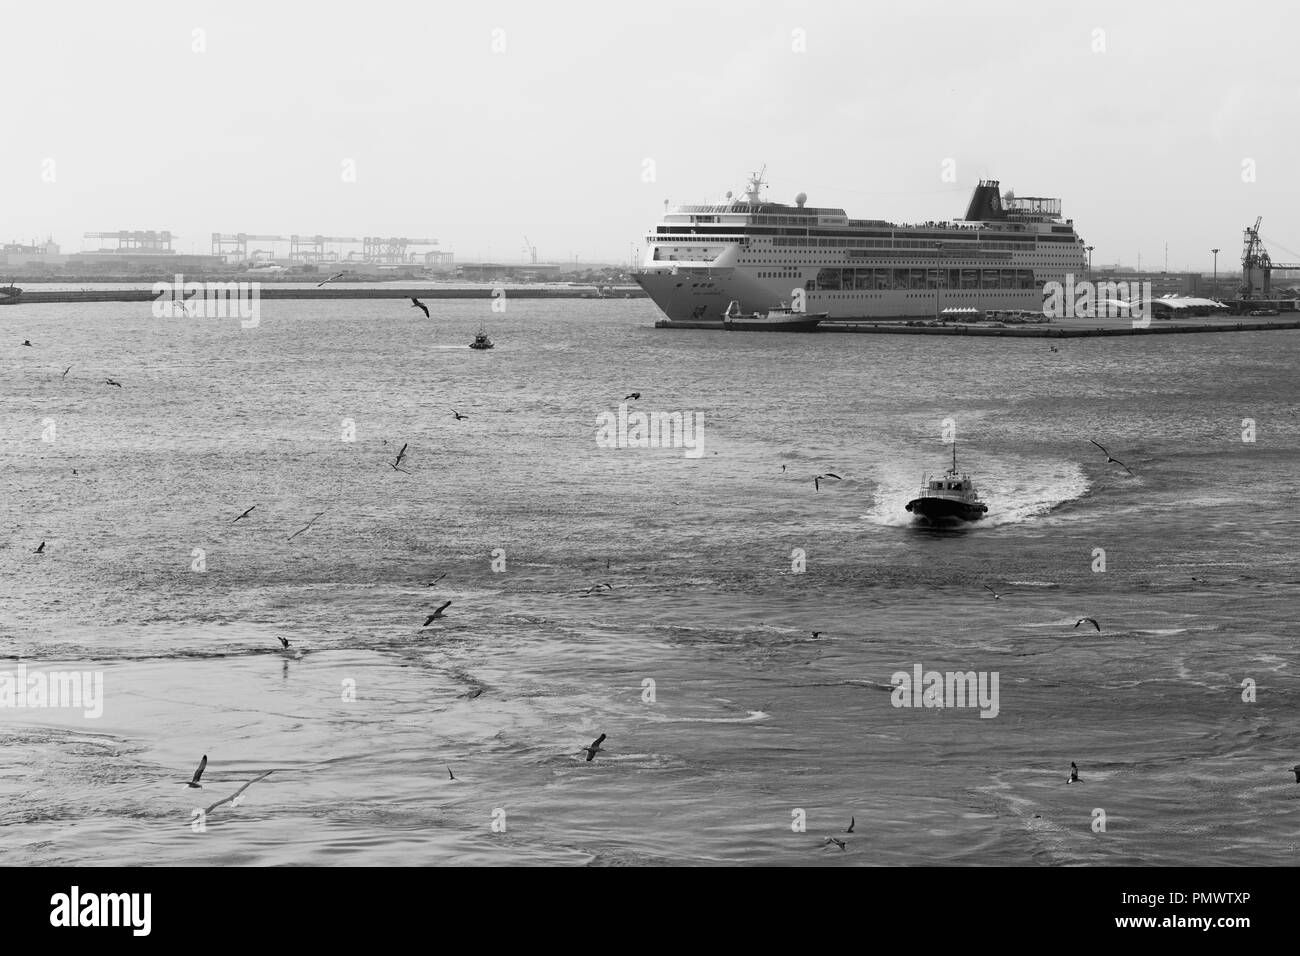 Ein Pilot Boot Escorts ein Kreuzfahrtschiff (nicht im Bild) aus Meer mit einem anderen Schiff in den Hintergrund. Möwen kreisen über dem Wasser gestört. Stockfoto